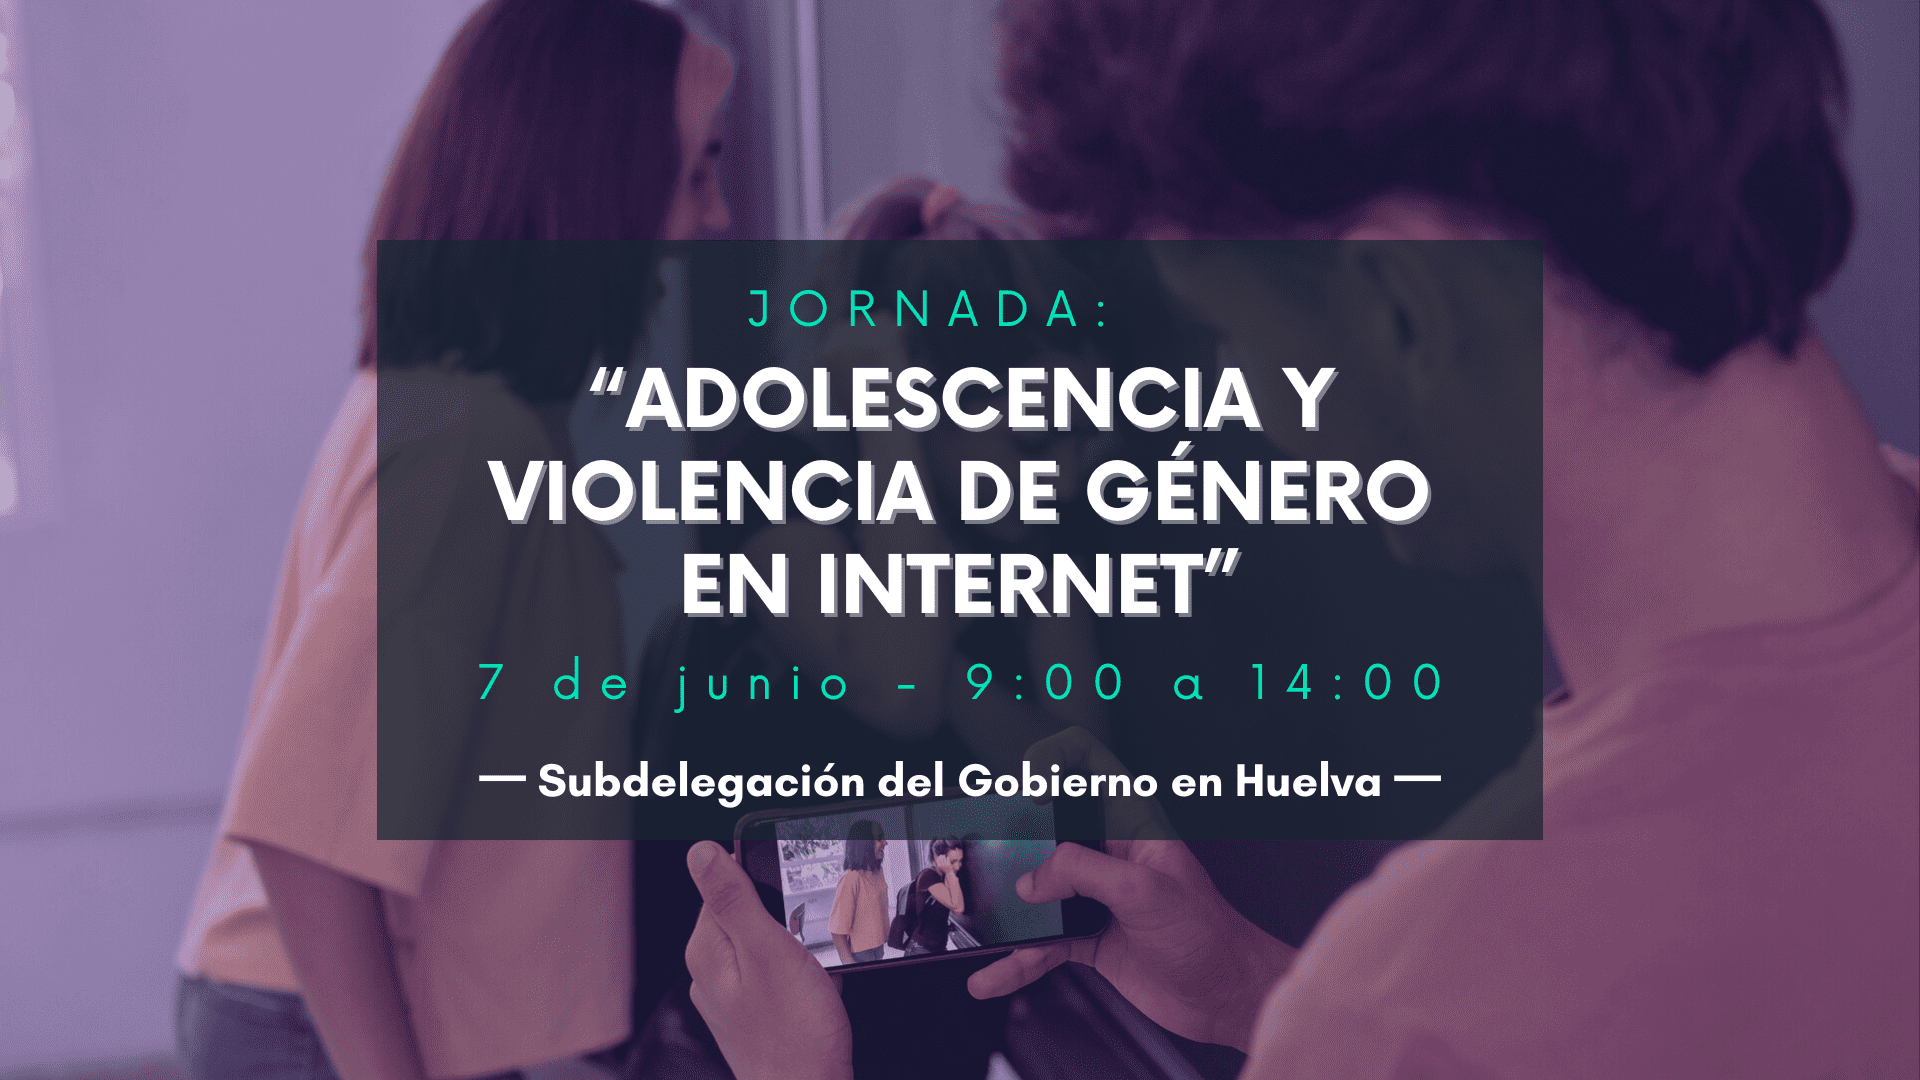 Adolescencia y Violencia de Genero en Internet Subdelegacion del Gobierno - “Adolescencia y Violencia de Género en Internet”, Subdelegación del Gobierno en Huelva